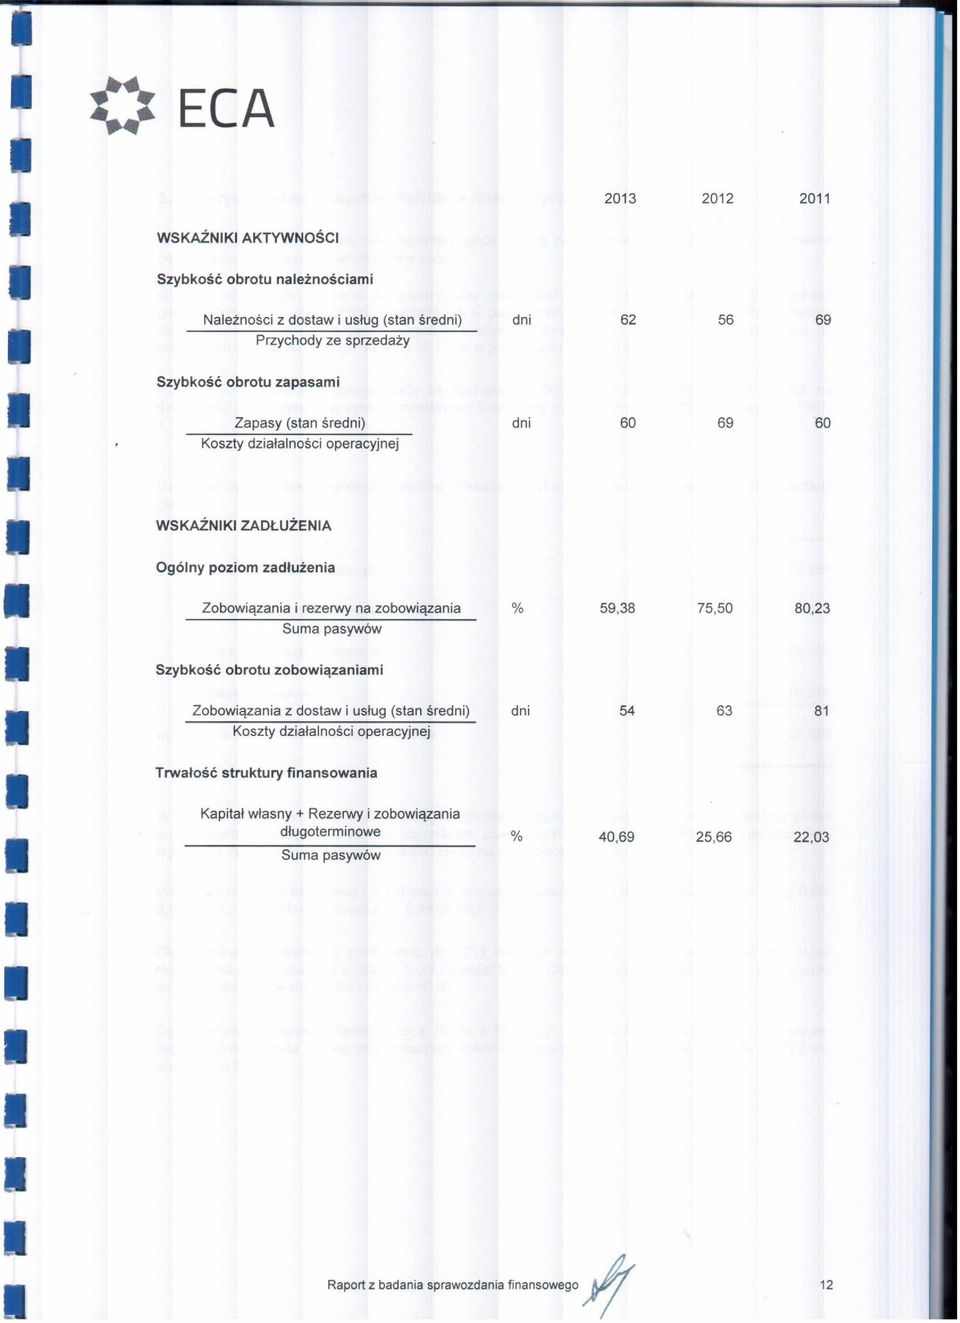 Zobowiązania i rezerwy na zobowiązania % 59,38 75,50 80,23 Suma pasywów Szybkość obrotu zobowiązaniami Zobowiązania z dostaw i usług (stan średni)